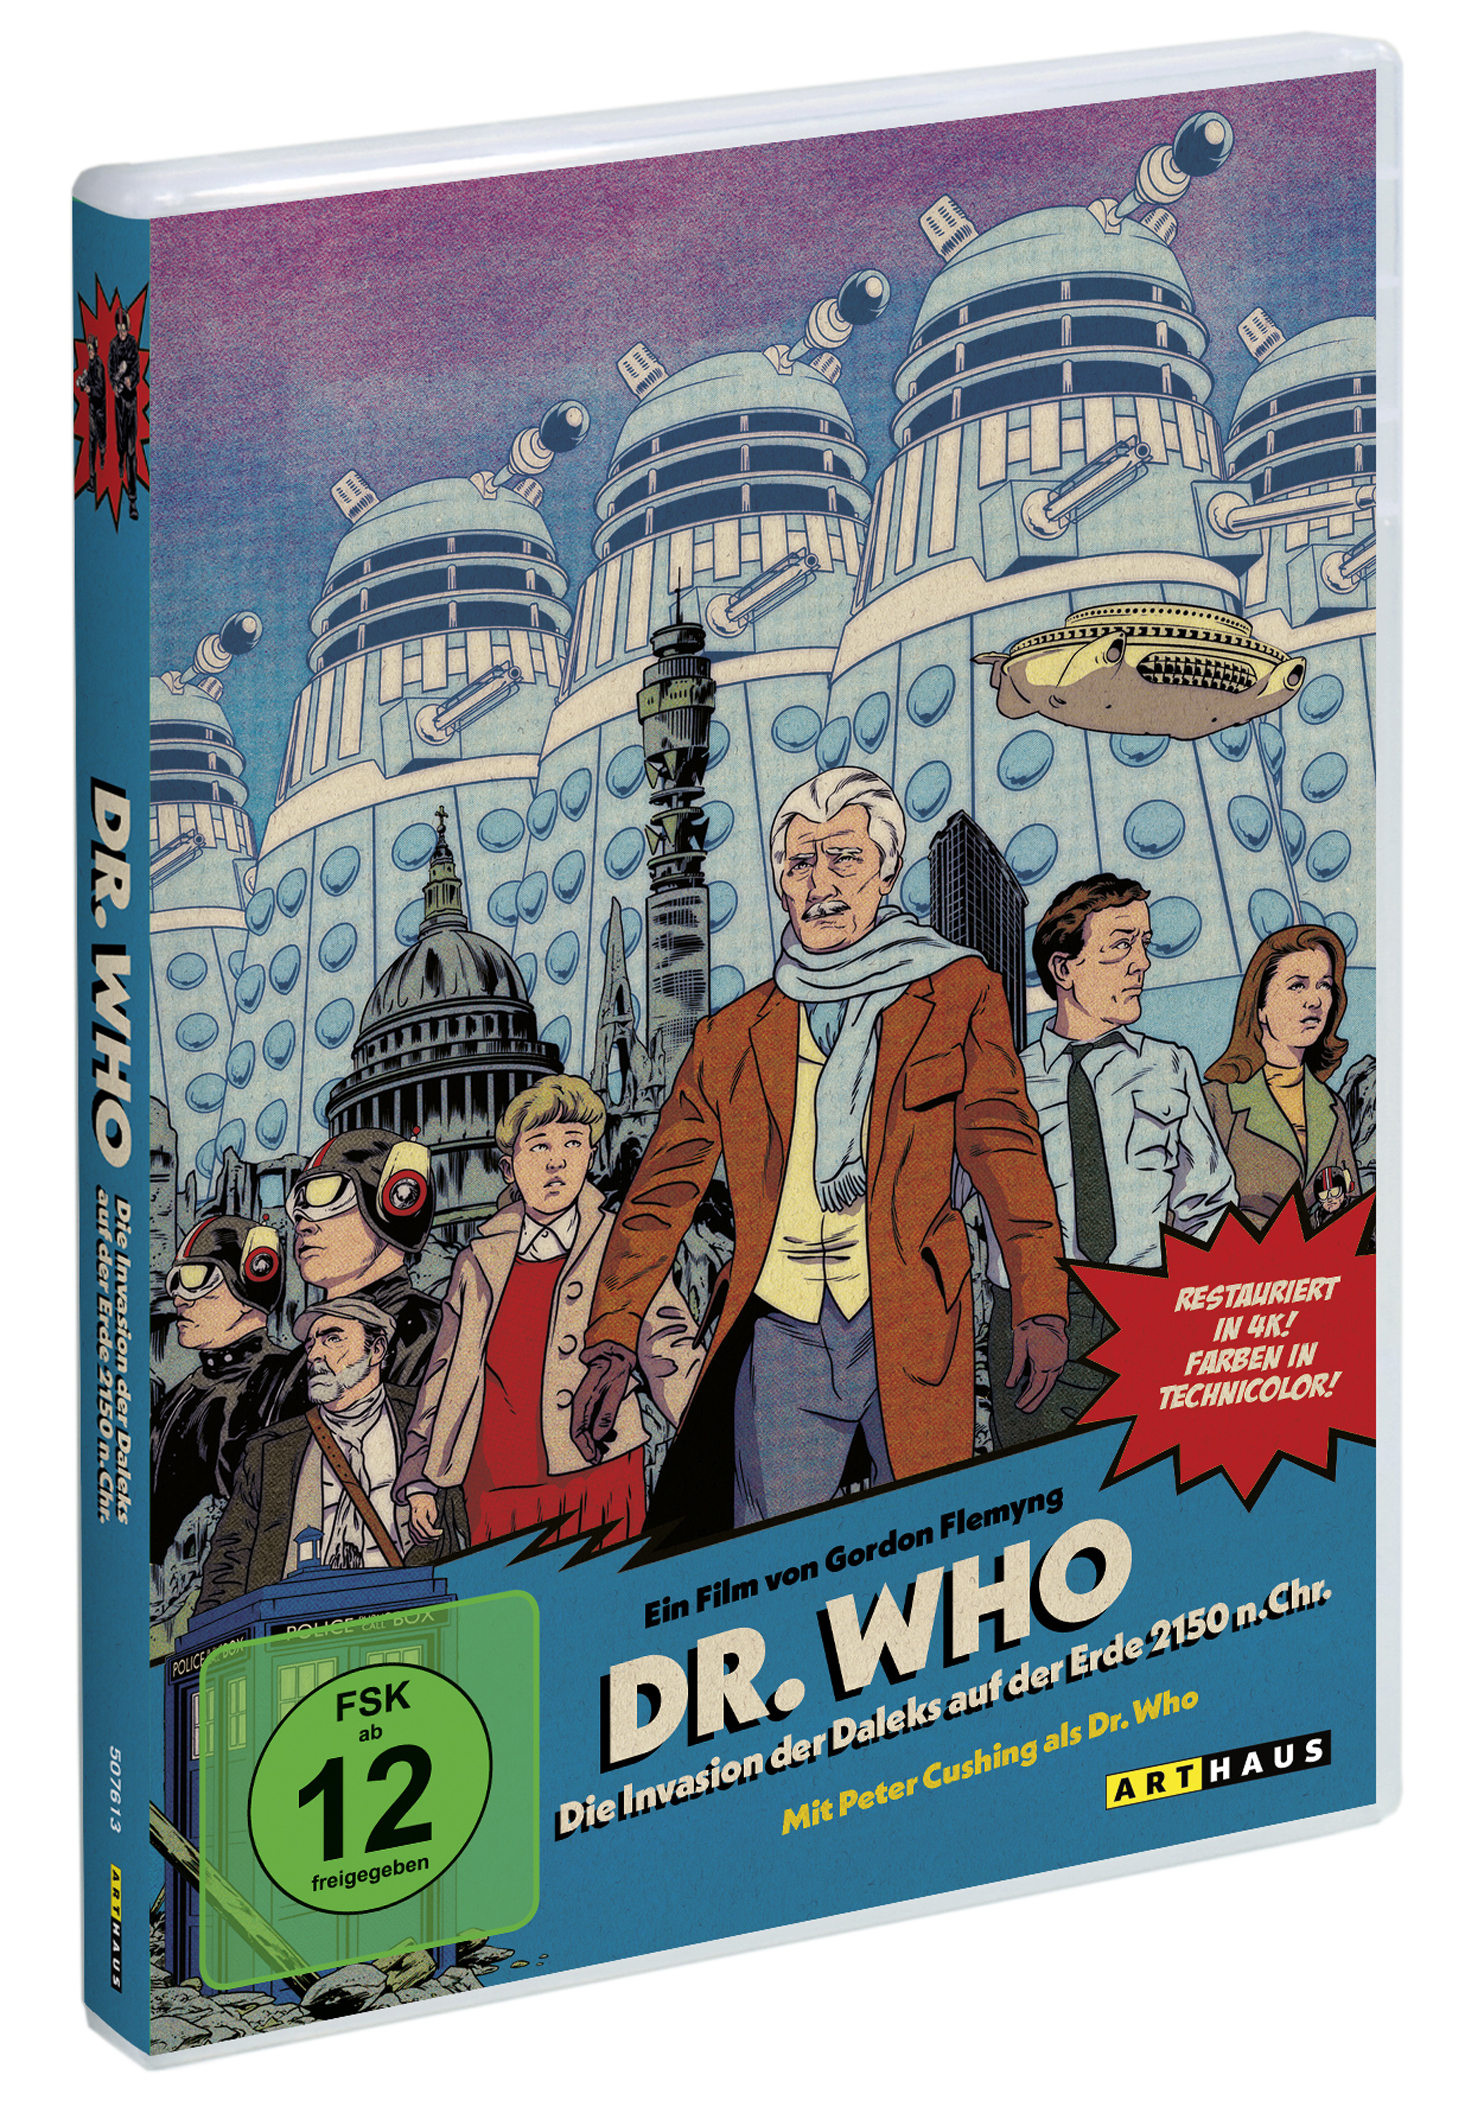 Dr. Who: Invasion Chr. Daleks der n. DVD Erde 2150 Die der auf